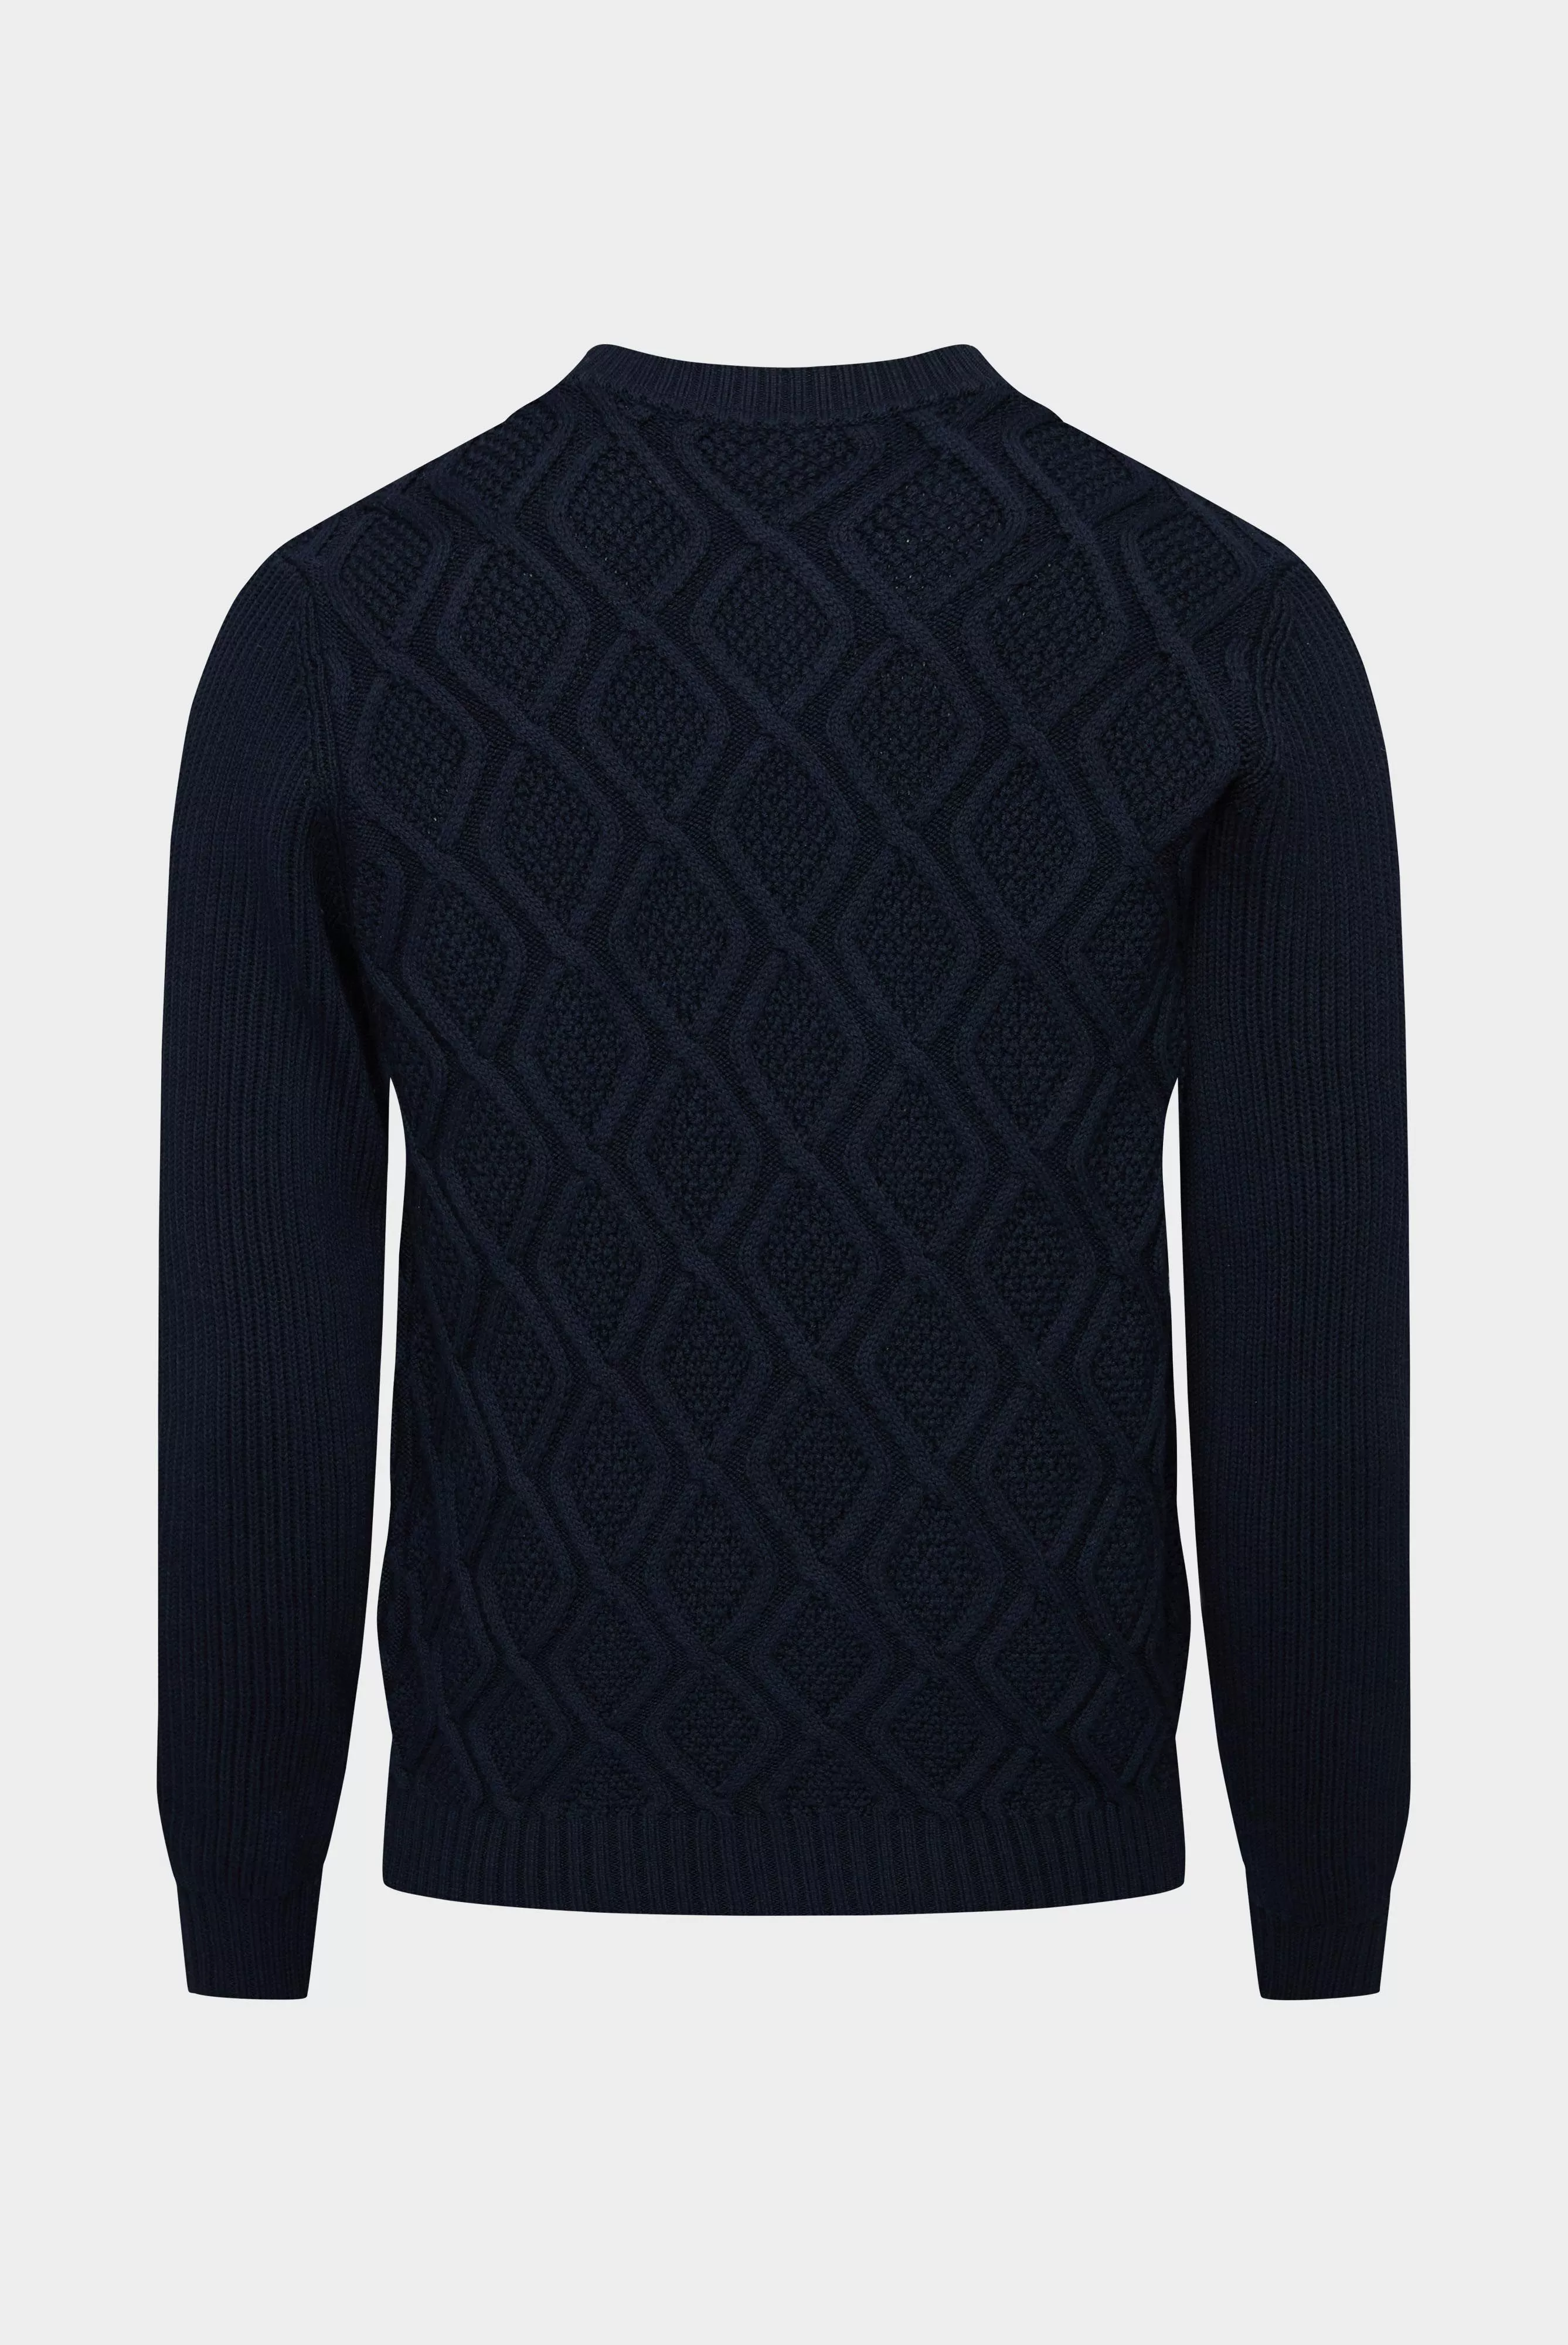 пуловер SINON темно-синий SINON_S00239_790 ,photo 2